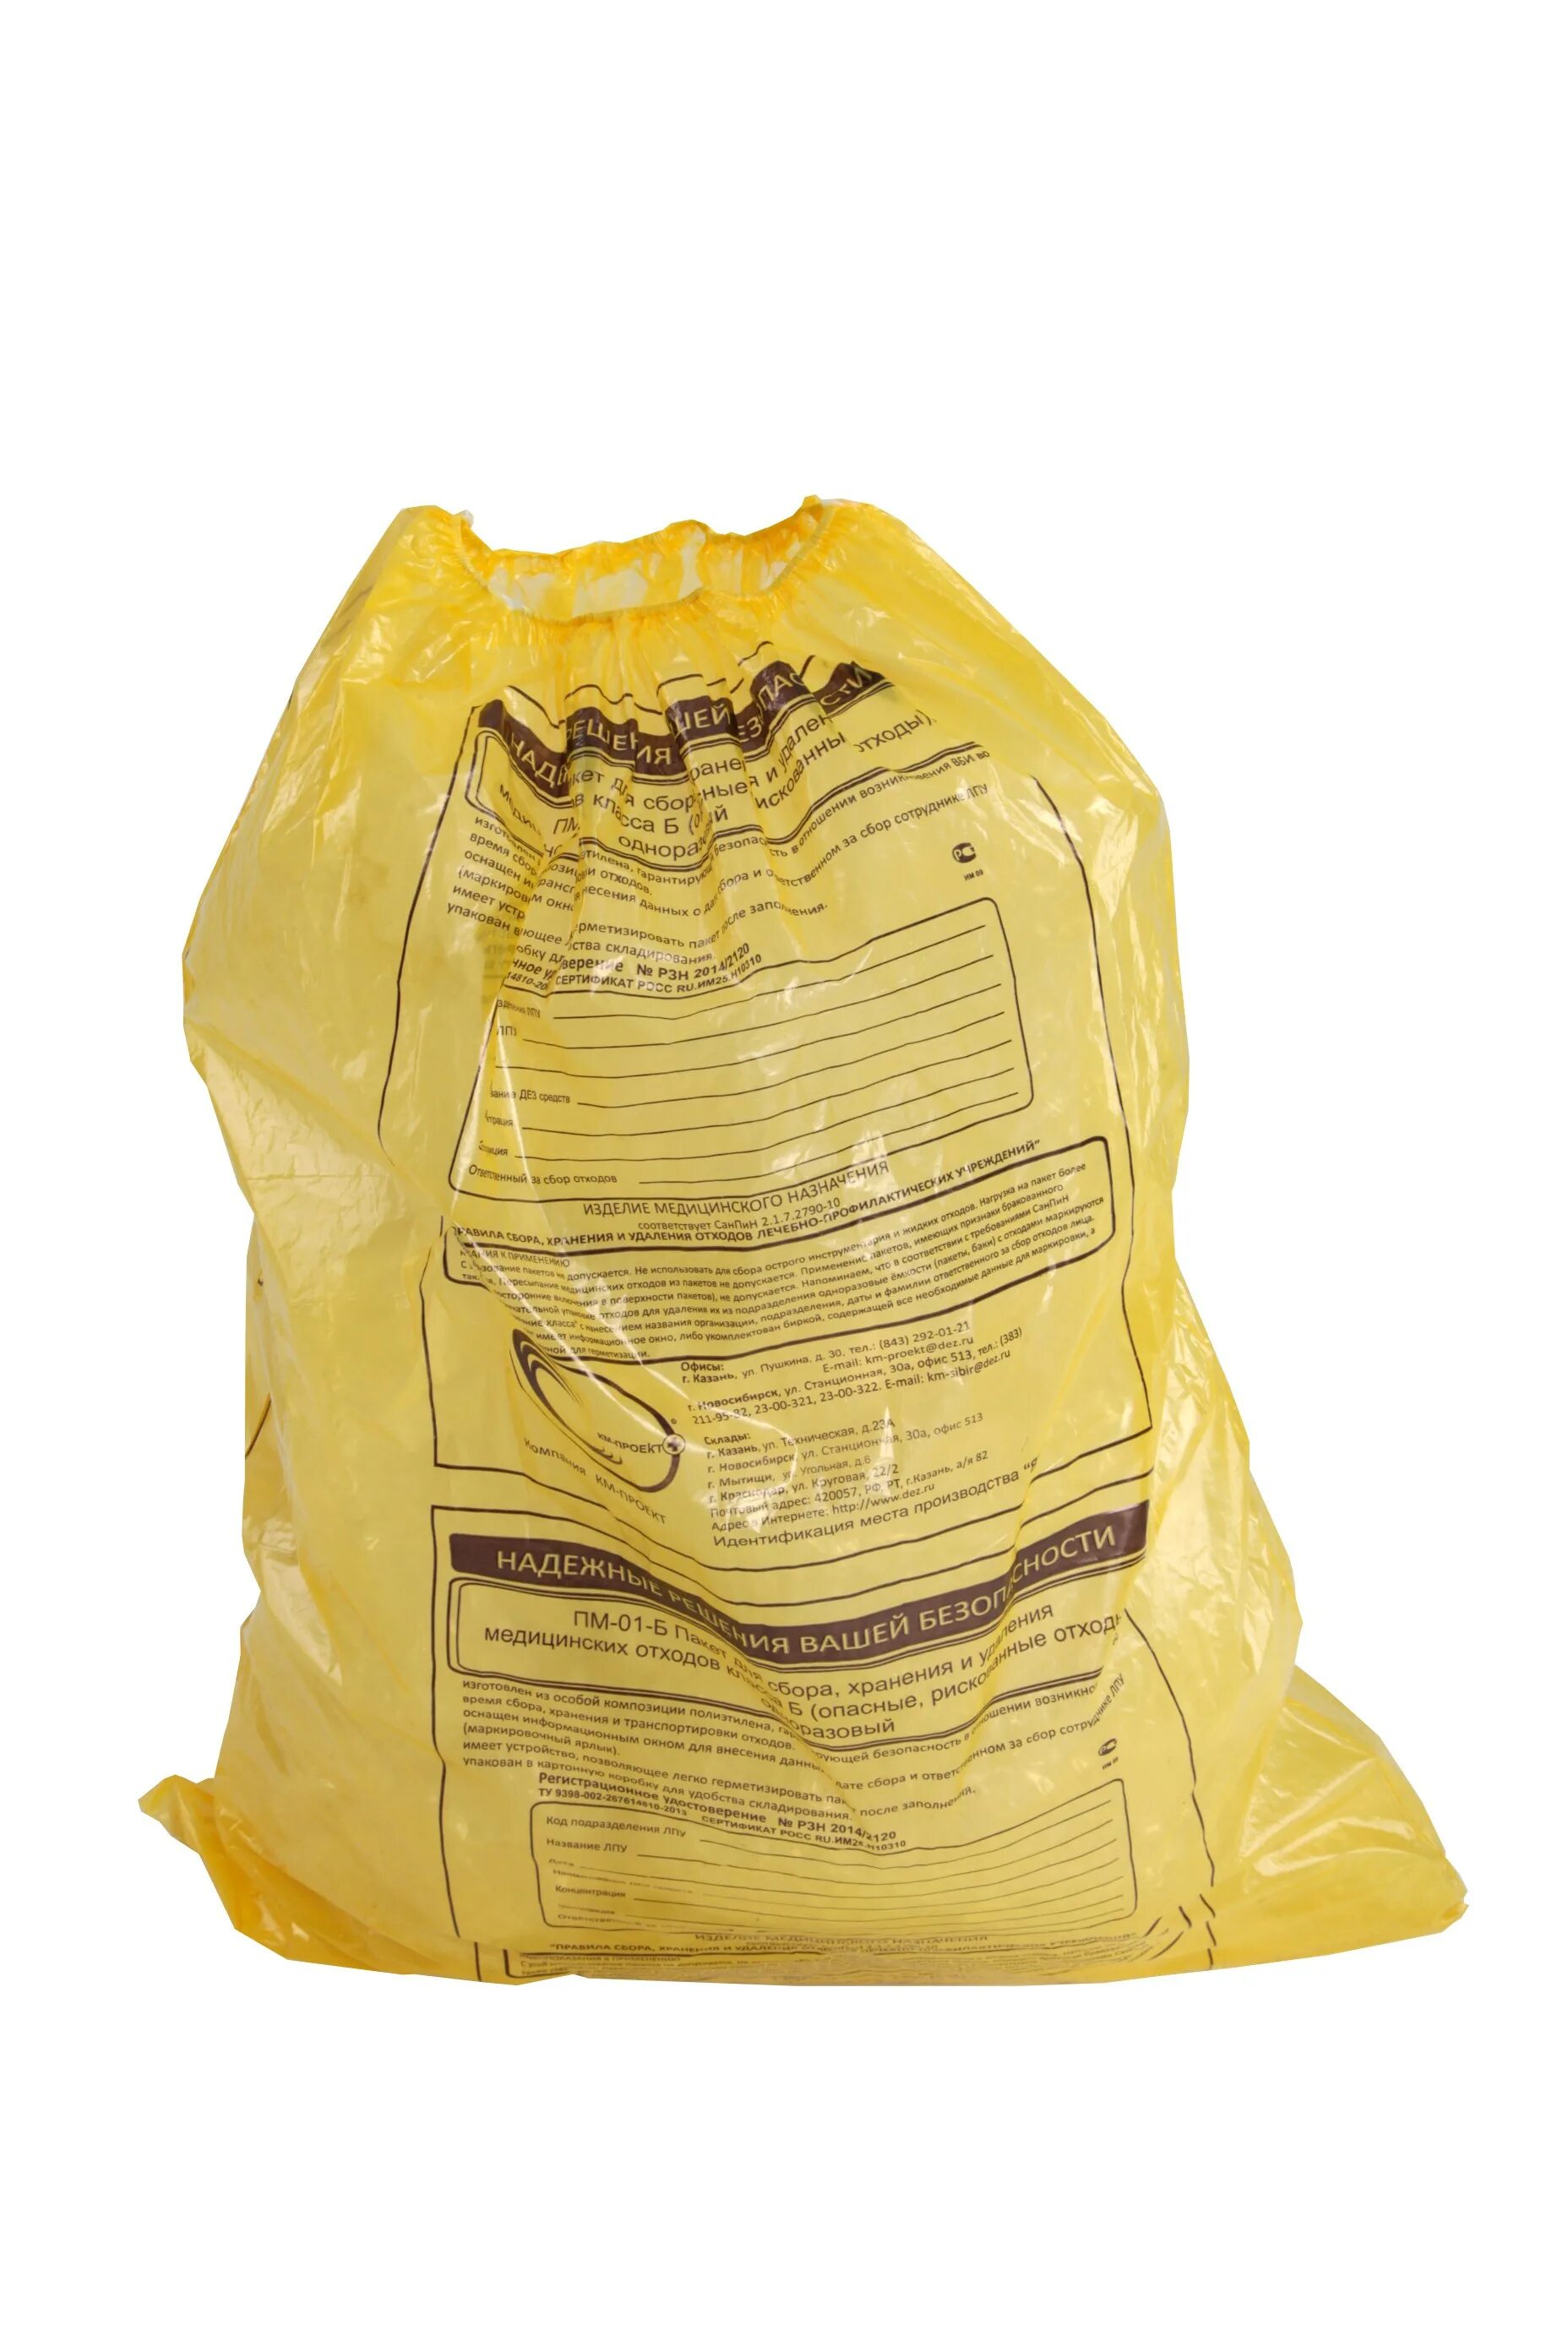 Пакеты для сбора отходов 500*600 б-желтые медком. Пакеты (мешки) для утилизации Инвамед. Мешки класса б для сбора медотходов. Мешки класса а для сбора медотходов. Пакеты для медотходов